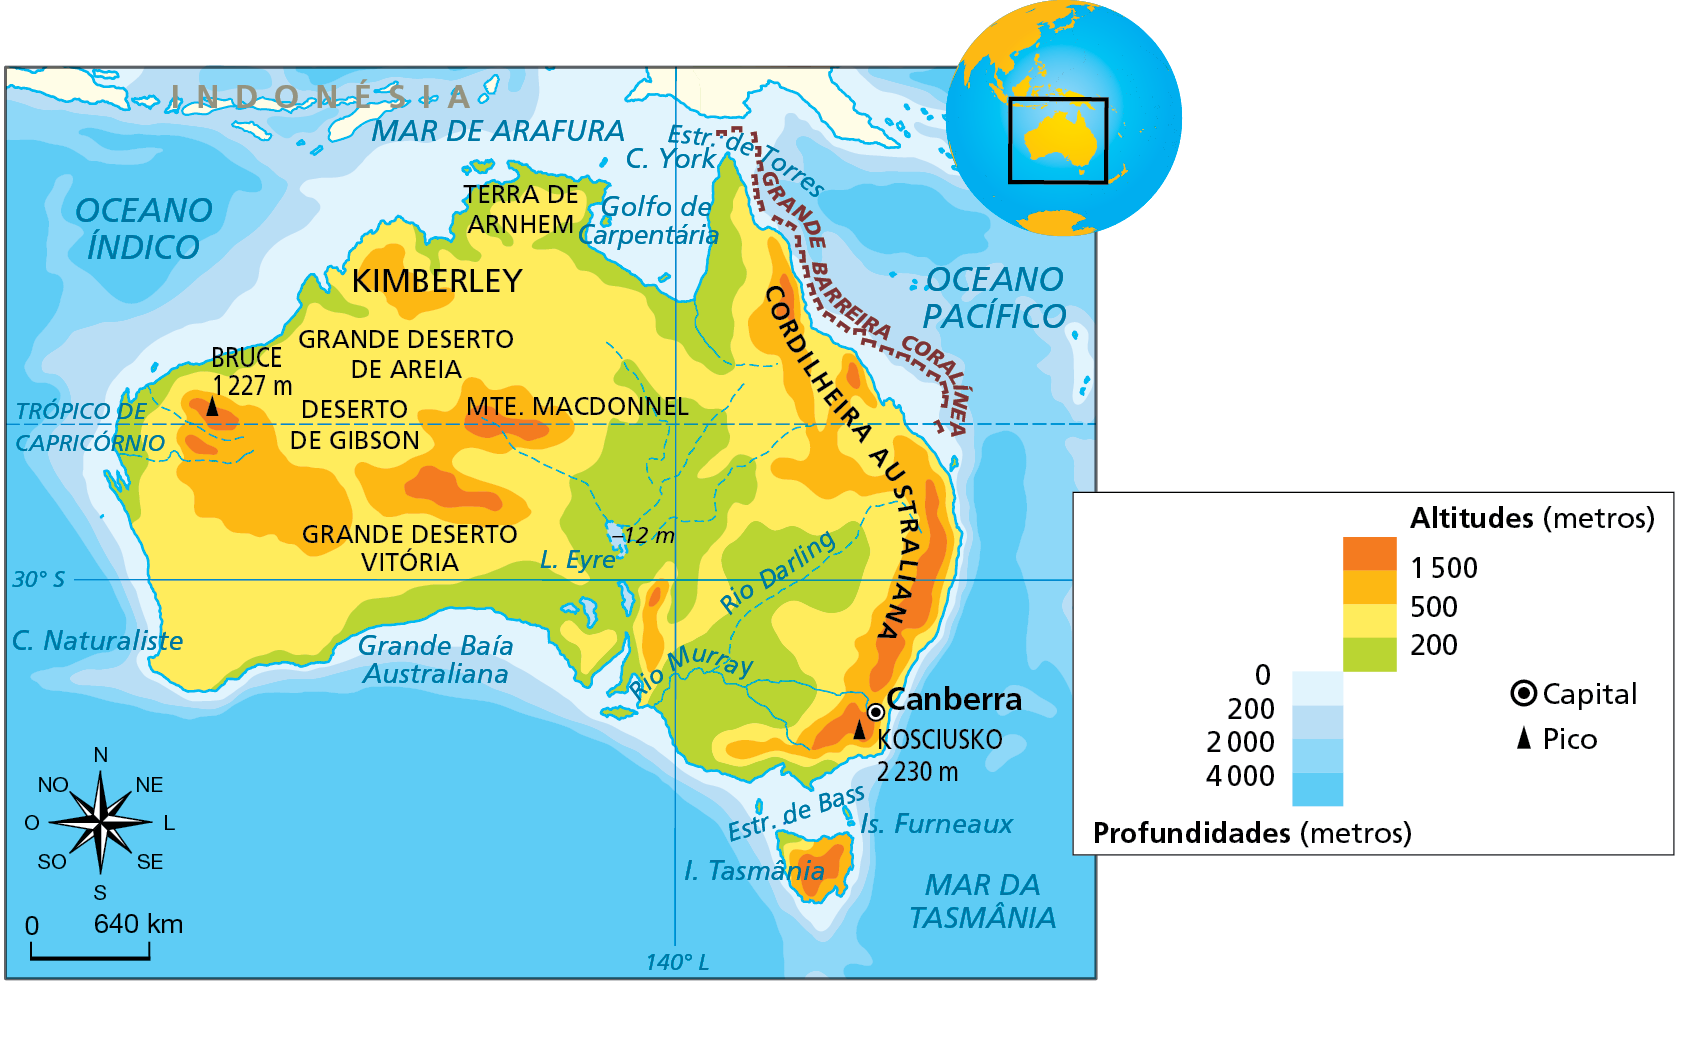 Mapa. Austrália: físico. Mapa do território australiano onde o relevo é evidenciado pelo uso de cores. 
Altitudes (metros): 
Até 200 metros: interior da costa centro-oriental; faixa na porção sul; estreita faixa na costa litorânea norte e oeste; pequena porção no extremo noroeste da Ilha da Tasmânia, ao sul da Austrália.
200 a 500 metros: faixas na costa litorânea e no interior da porção leste da Austrália, pequenas porções no sul; grande parte da porção centro-ocidental da Austráia, onde ocorrem a Terra de Arnhem, no extremo norte; o Grande Deserto de Areia, na porção noroeste; o Deserto de Gibson, na parte central da porção oeste; o Grande Deserto Vitória, no sul da porção oeste da Austrália; estreita faixa na porção noroeste da Ilha da Tasmânia.
500 a 1.500 metros: área da Cordilheira Australiana, na costa oriental, onde está a capital da Austrália, Canberra; pequenas porções na parte central e na costa oeste (Kimberley); área centro-oriental da Ilha da Tasmânia.
Acima de 1.500 metros: porções da Cordilheira Australiana, na costa oriental; pequenas porções na parte central do país (Monte Macdonnel) e na costa oeste; área central da Ilha da Tasmânia, a sudeste da Austrália. 
Profundidades:
Zero a 200 metros: toda a faixa litorânea mais próxima do território da Austrália.
200 a 2.000 metros: estreita faixa posterior à faixa litorânea australiana.
2.000 ou mais metros: área posterior à faixa de 200 a 2.000 metros de profundidade.
Picos: Kosciusko, com 2.230 metros de altitude, no sul da Cordilheira Australiana, na costa oriental; Bruce, com 1.227 metros de altitude, na costa oeste. 
Rios intermitentes no centro da costa oeste e na área centro-oriental; Rio Darling (intermitente) no interior da porção oriental; Rio Murray (perene), na porção sudeste. Lago Eyre, a 12 metros abaixo do nível do mar, na porção centro-oriental.
Grande Barreira Coralínea no litoral nordeste australiano.
Grande Baía Australiana no litoral sul; Golfo de Carpentária, no litoral norte. Mar de Arafura, ao norte da Austrália; Estreito de Bass, entre Austrália e Ilha da Tasmânia. Estreito de Torres e Canal York no litoral nordeste da Austrália. 
Abaixo, rosa dos ventos e escala de 0 a 640 quilômetros.